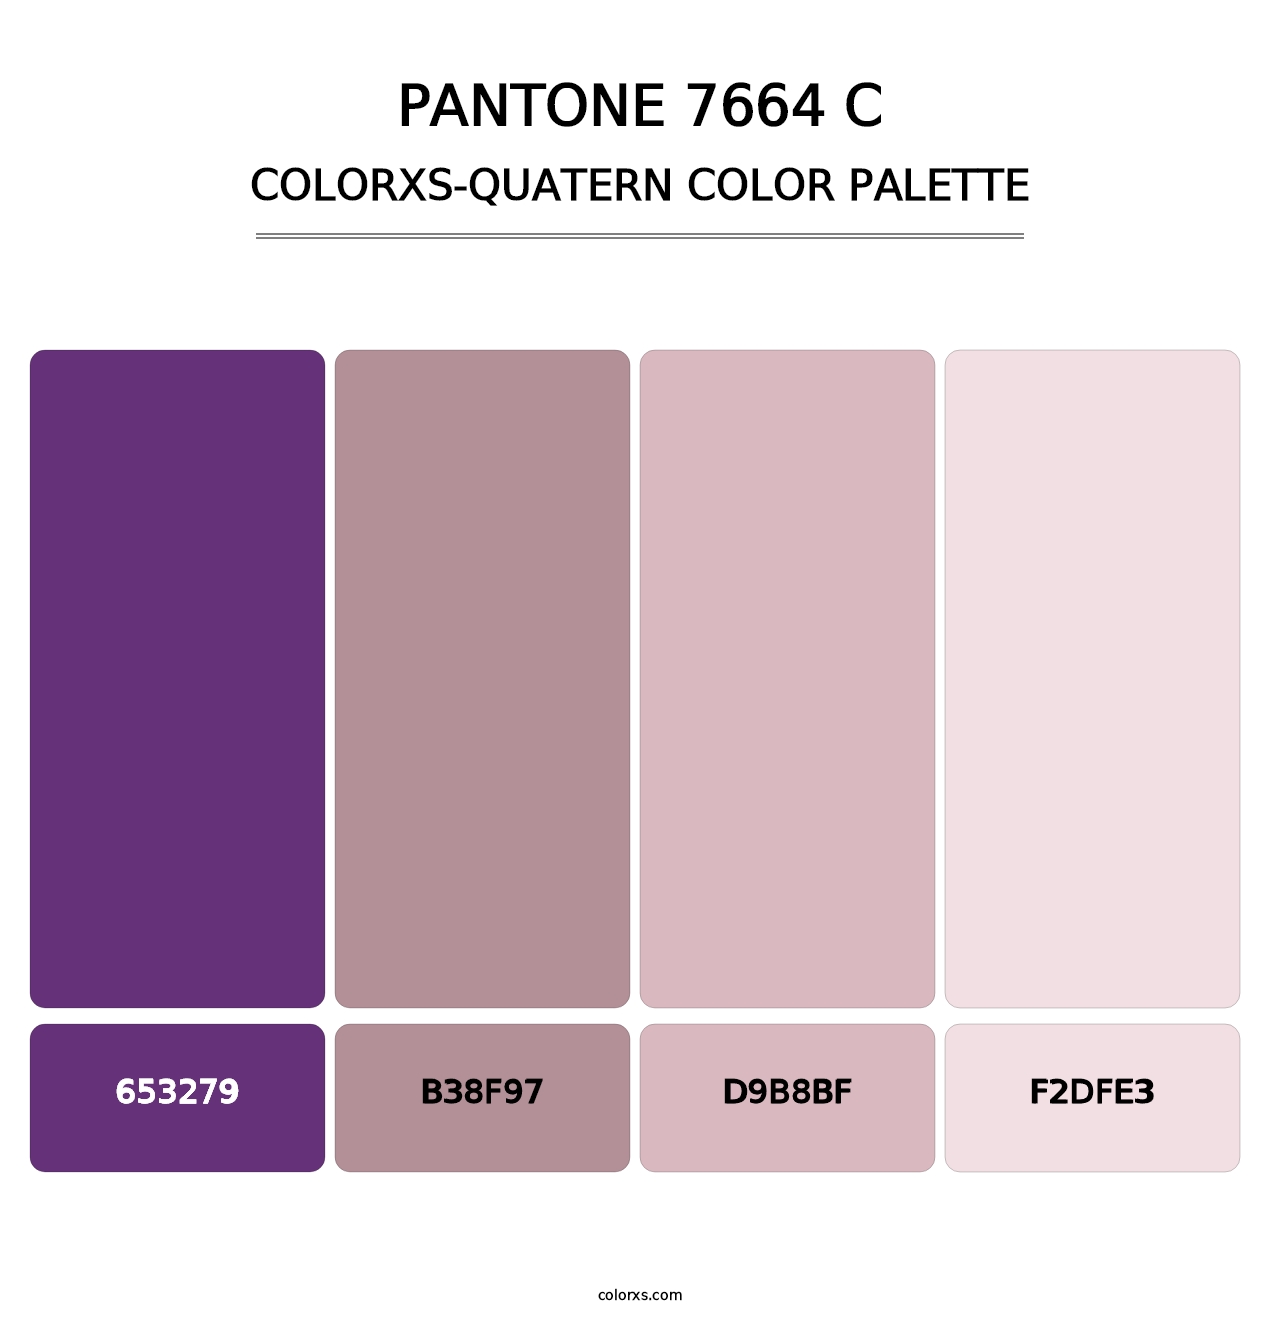 PANTONE 7664 C - Colorxs Quatern Palette